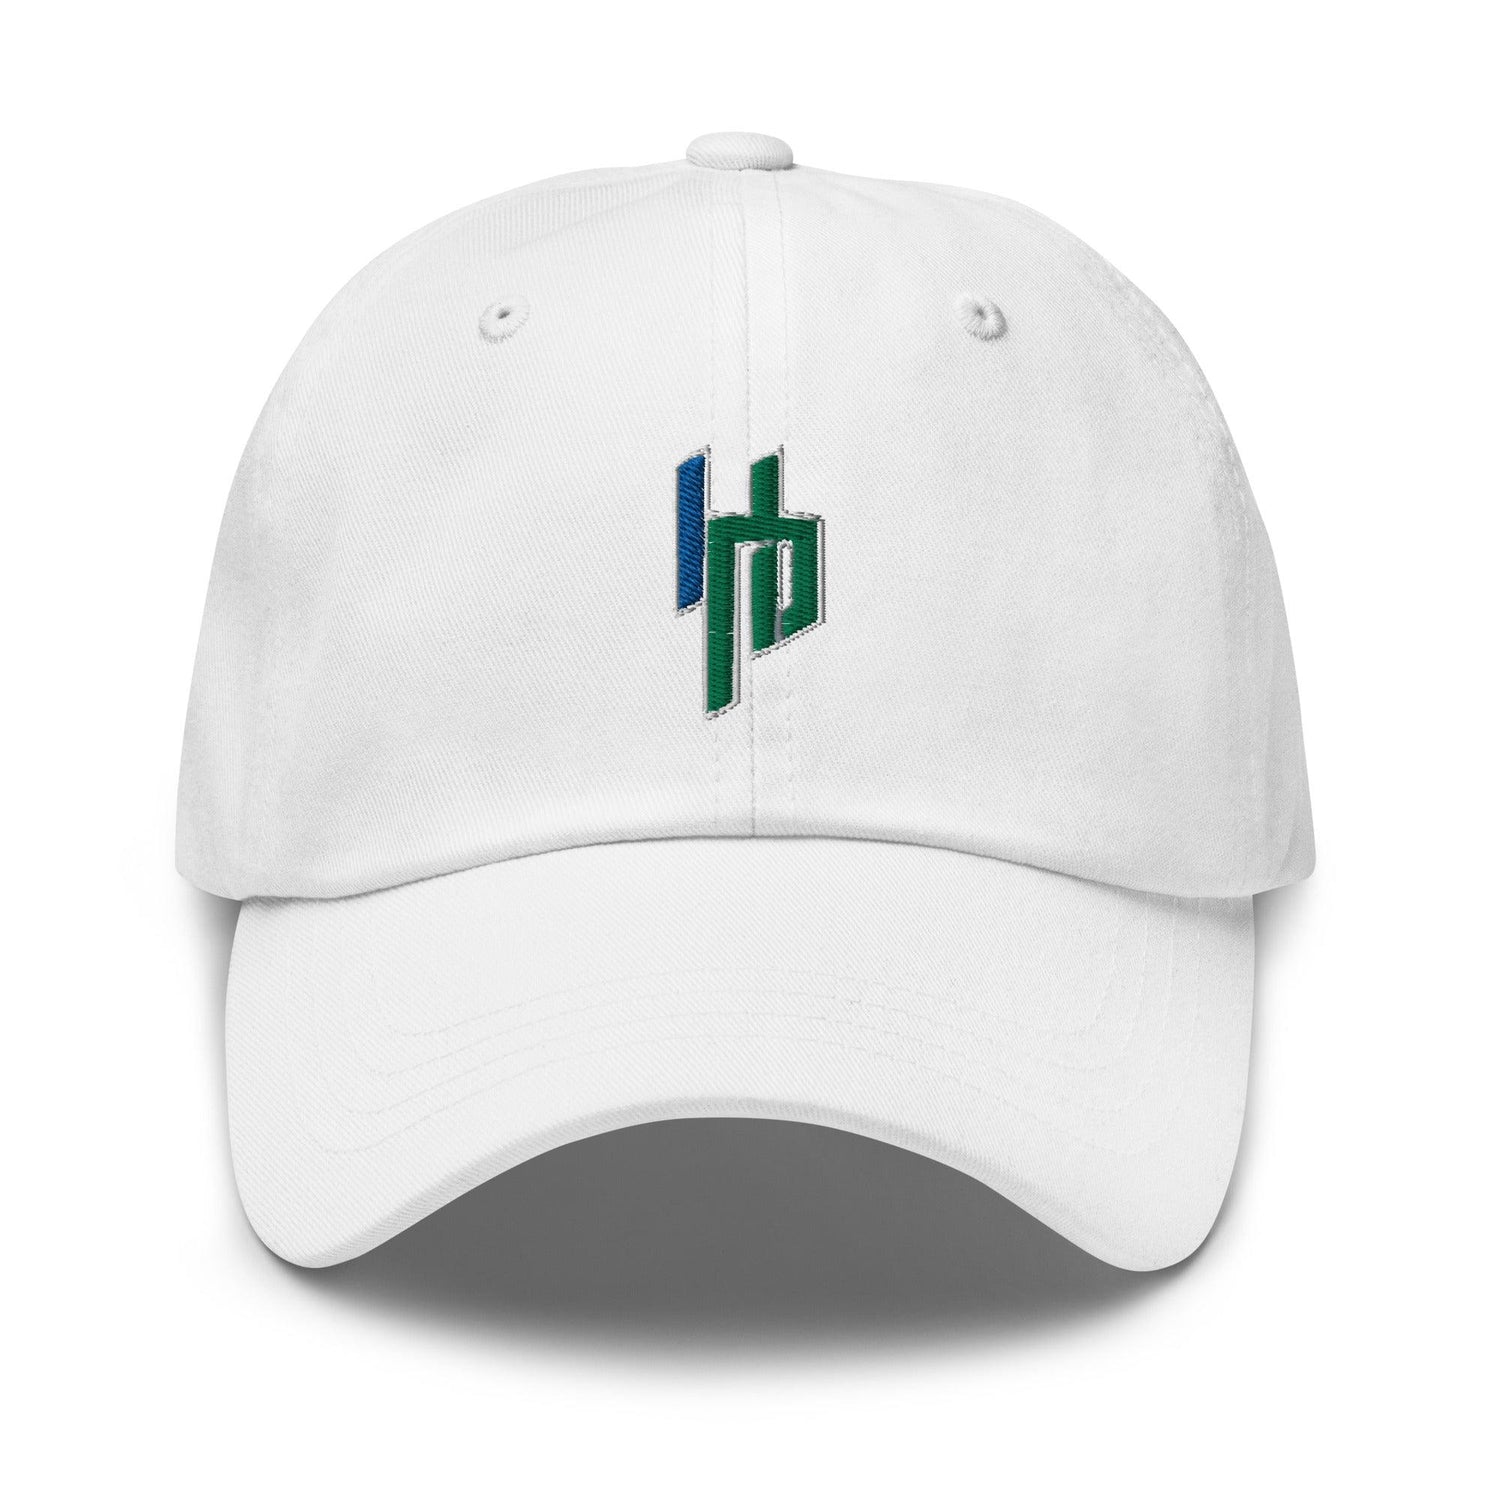 Harrison Povey "Essential" hat - Fan Arch